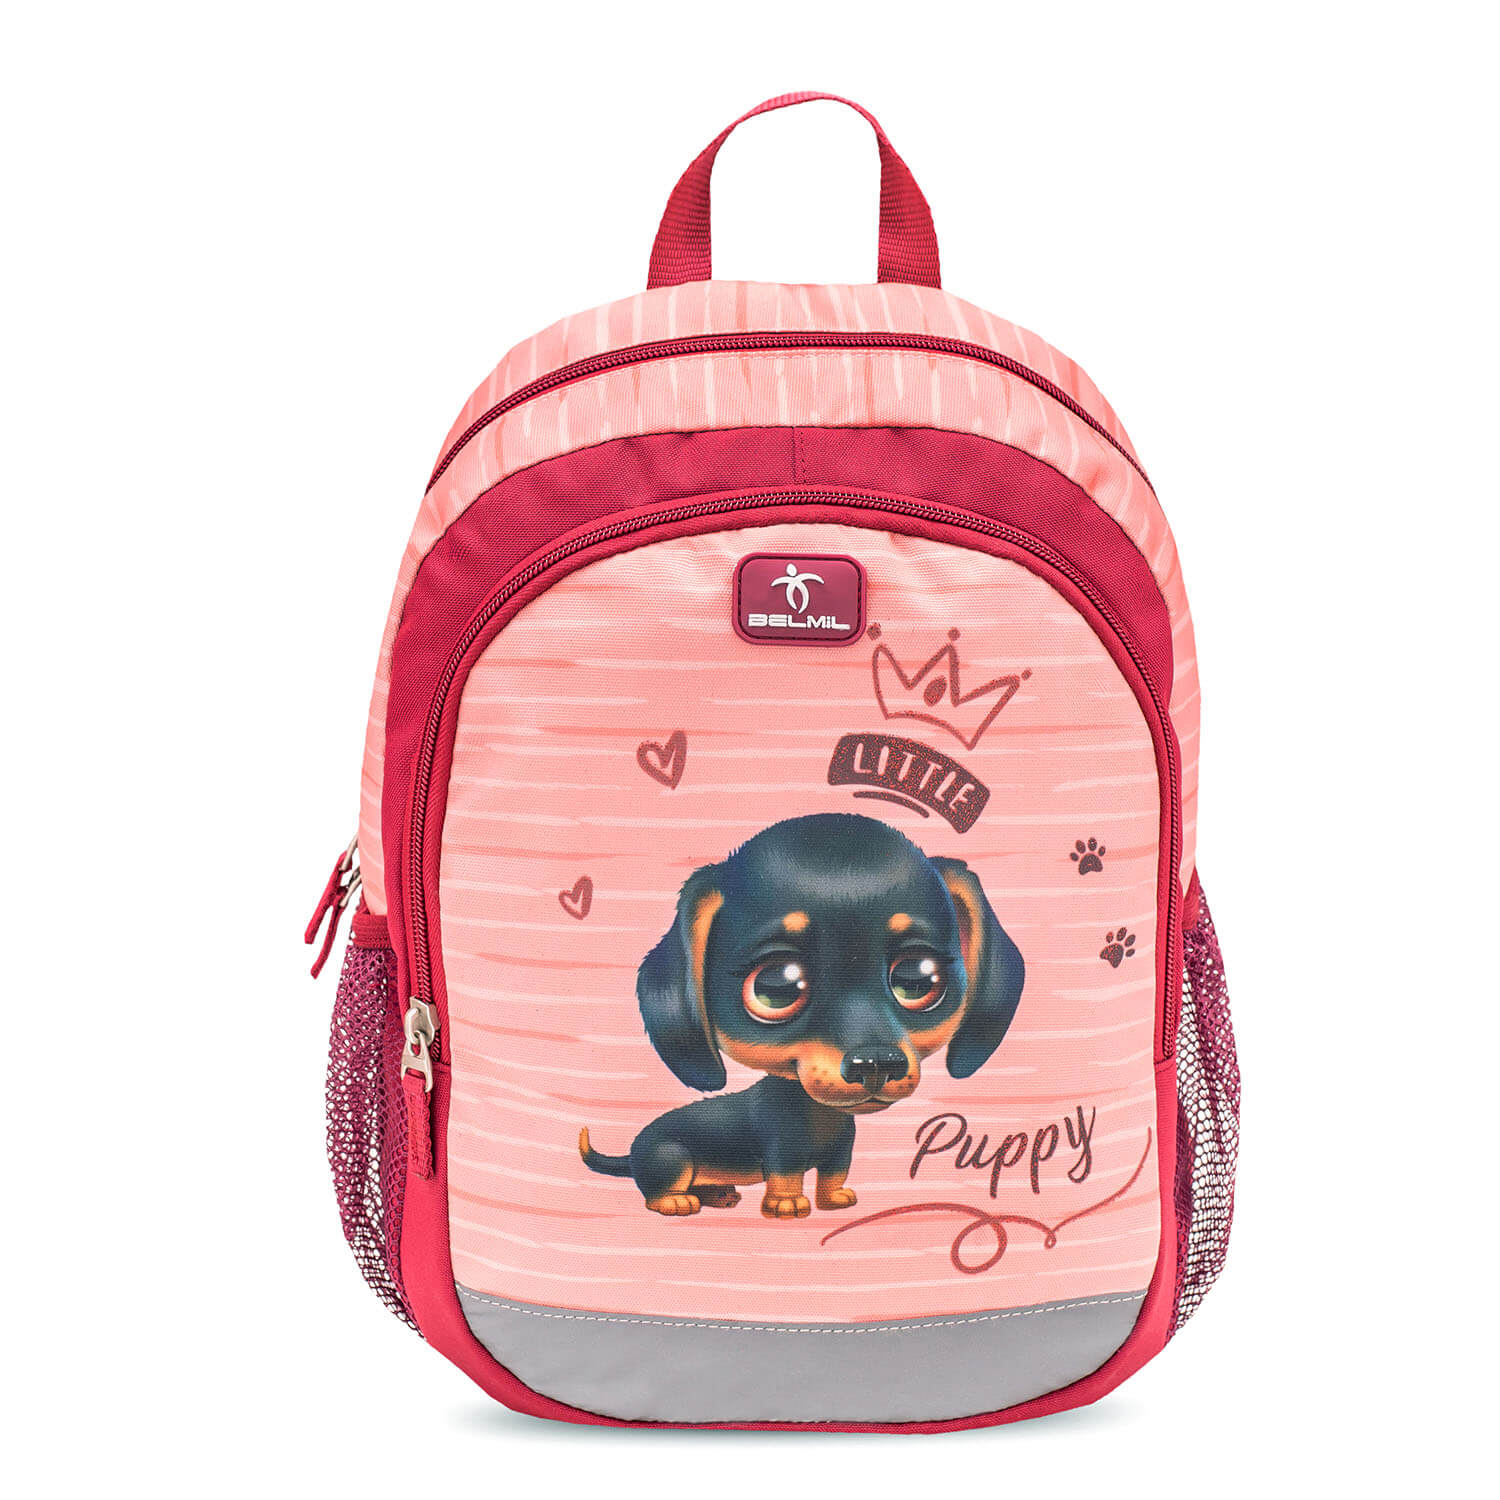 Kiddy Plus Little Puppy Kindergarten Bag with GRATIS Storage box